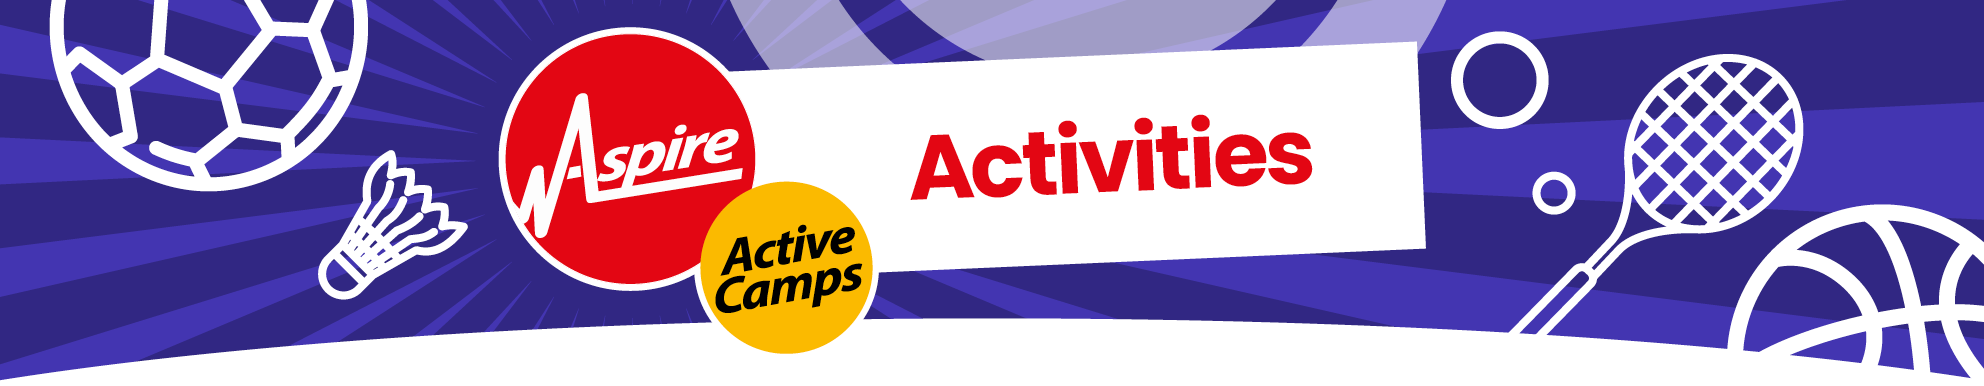 Active-Camps-Activities